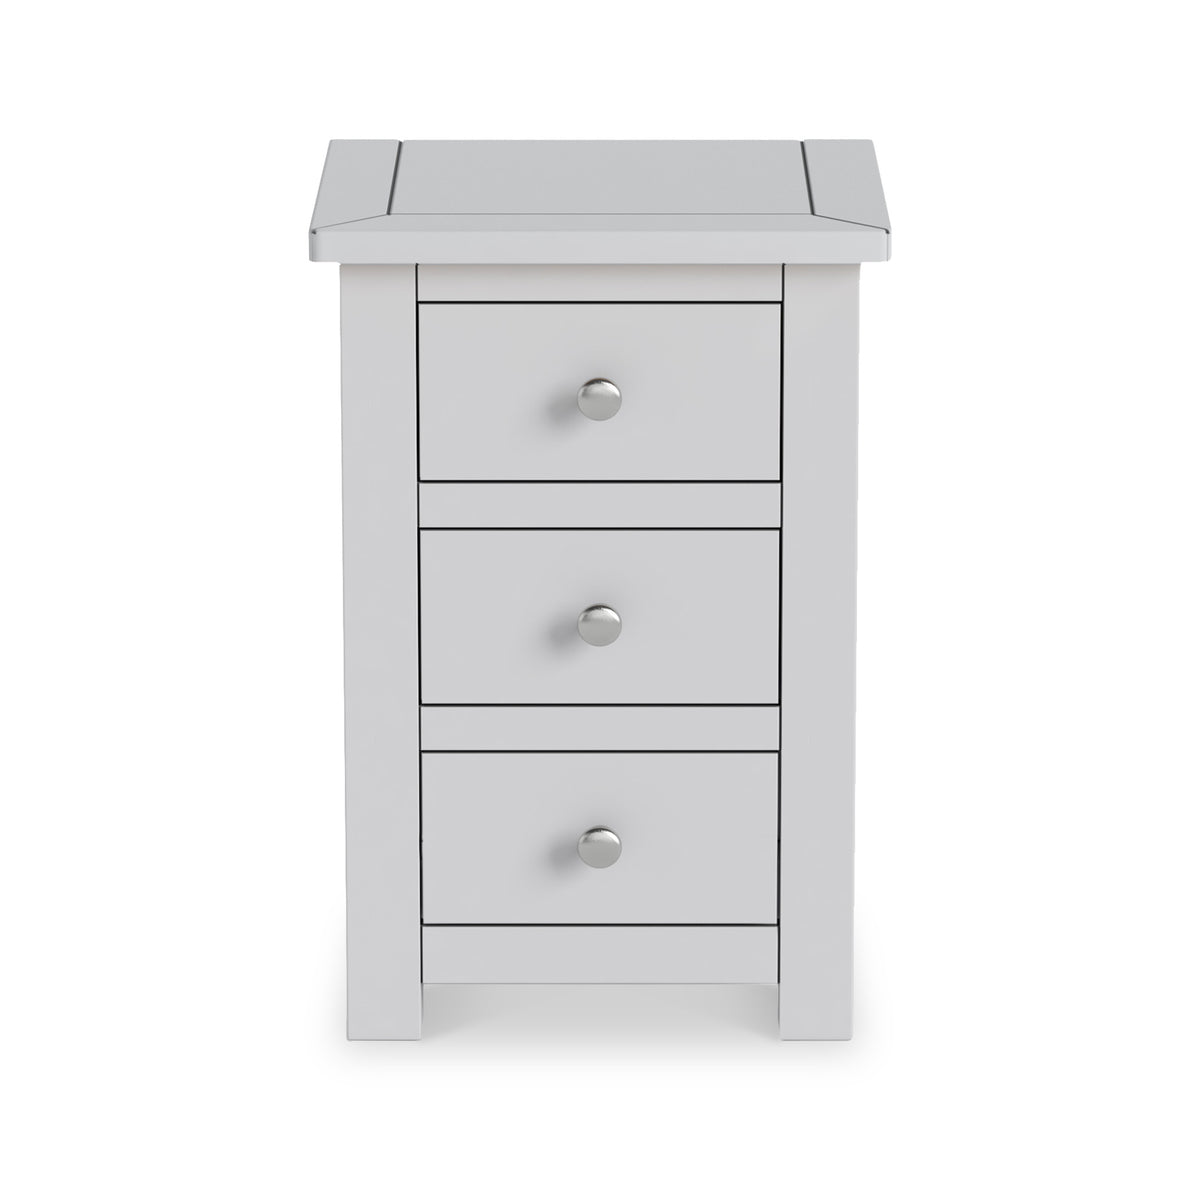 Duchy Inox Grey 3 Drawer Bedside Cabinet